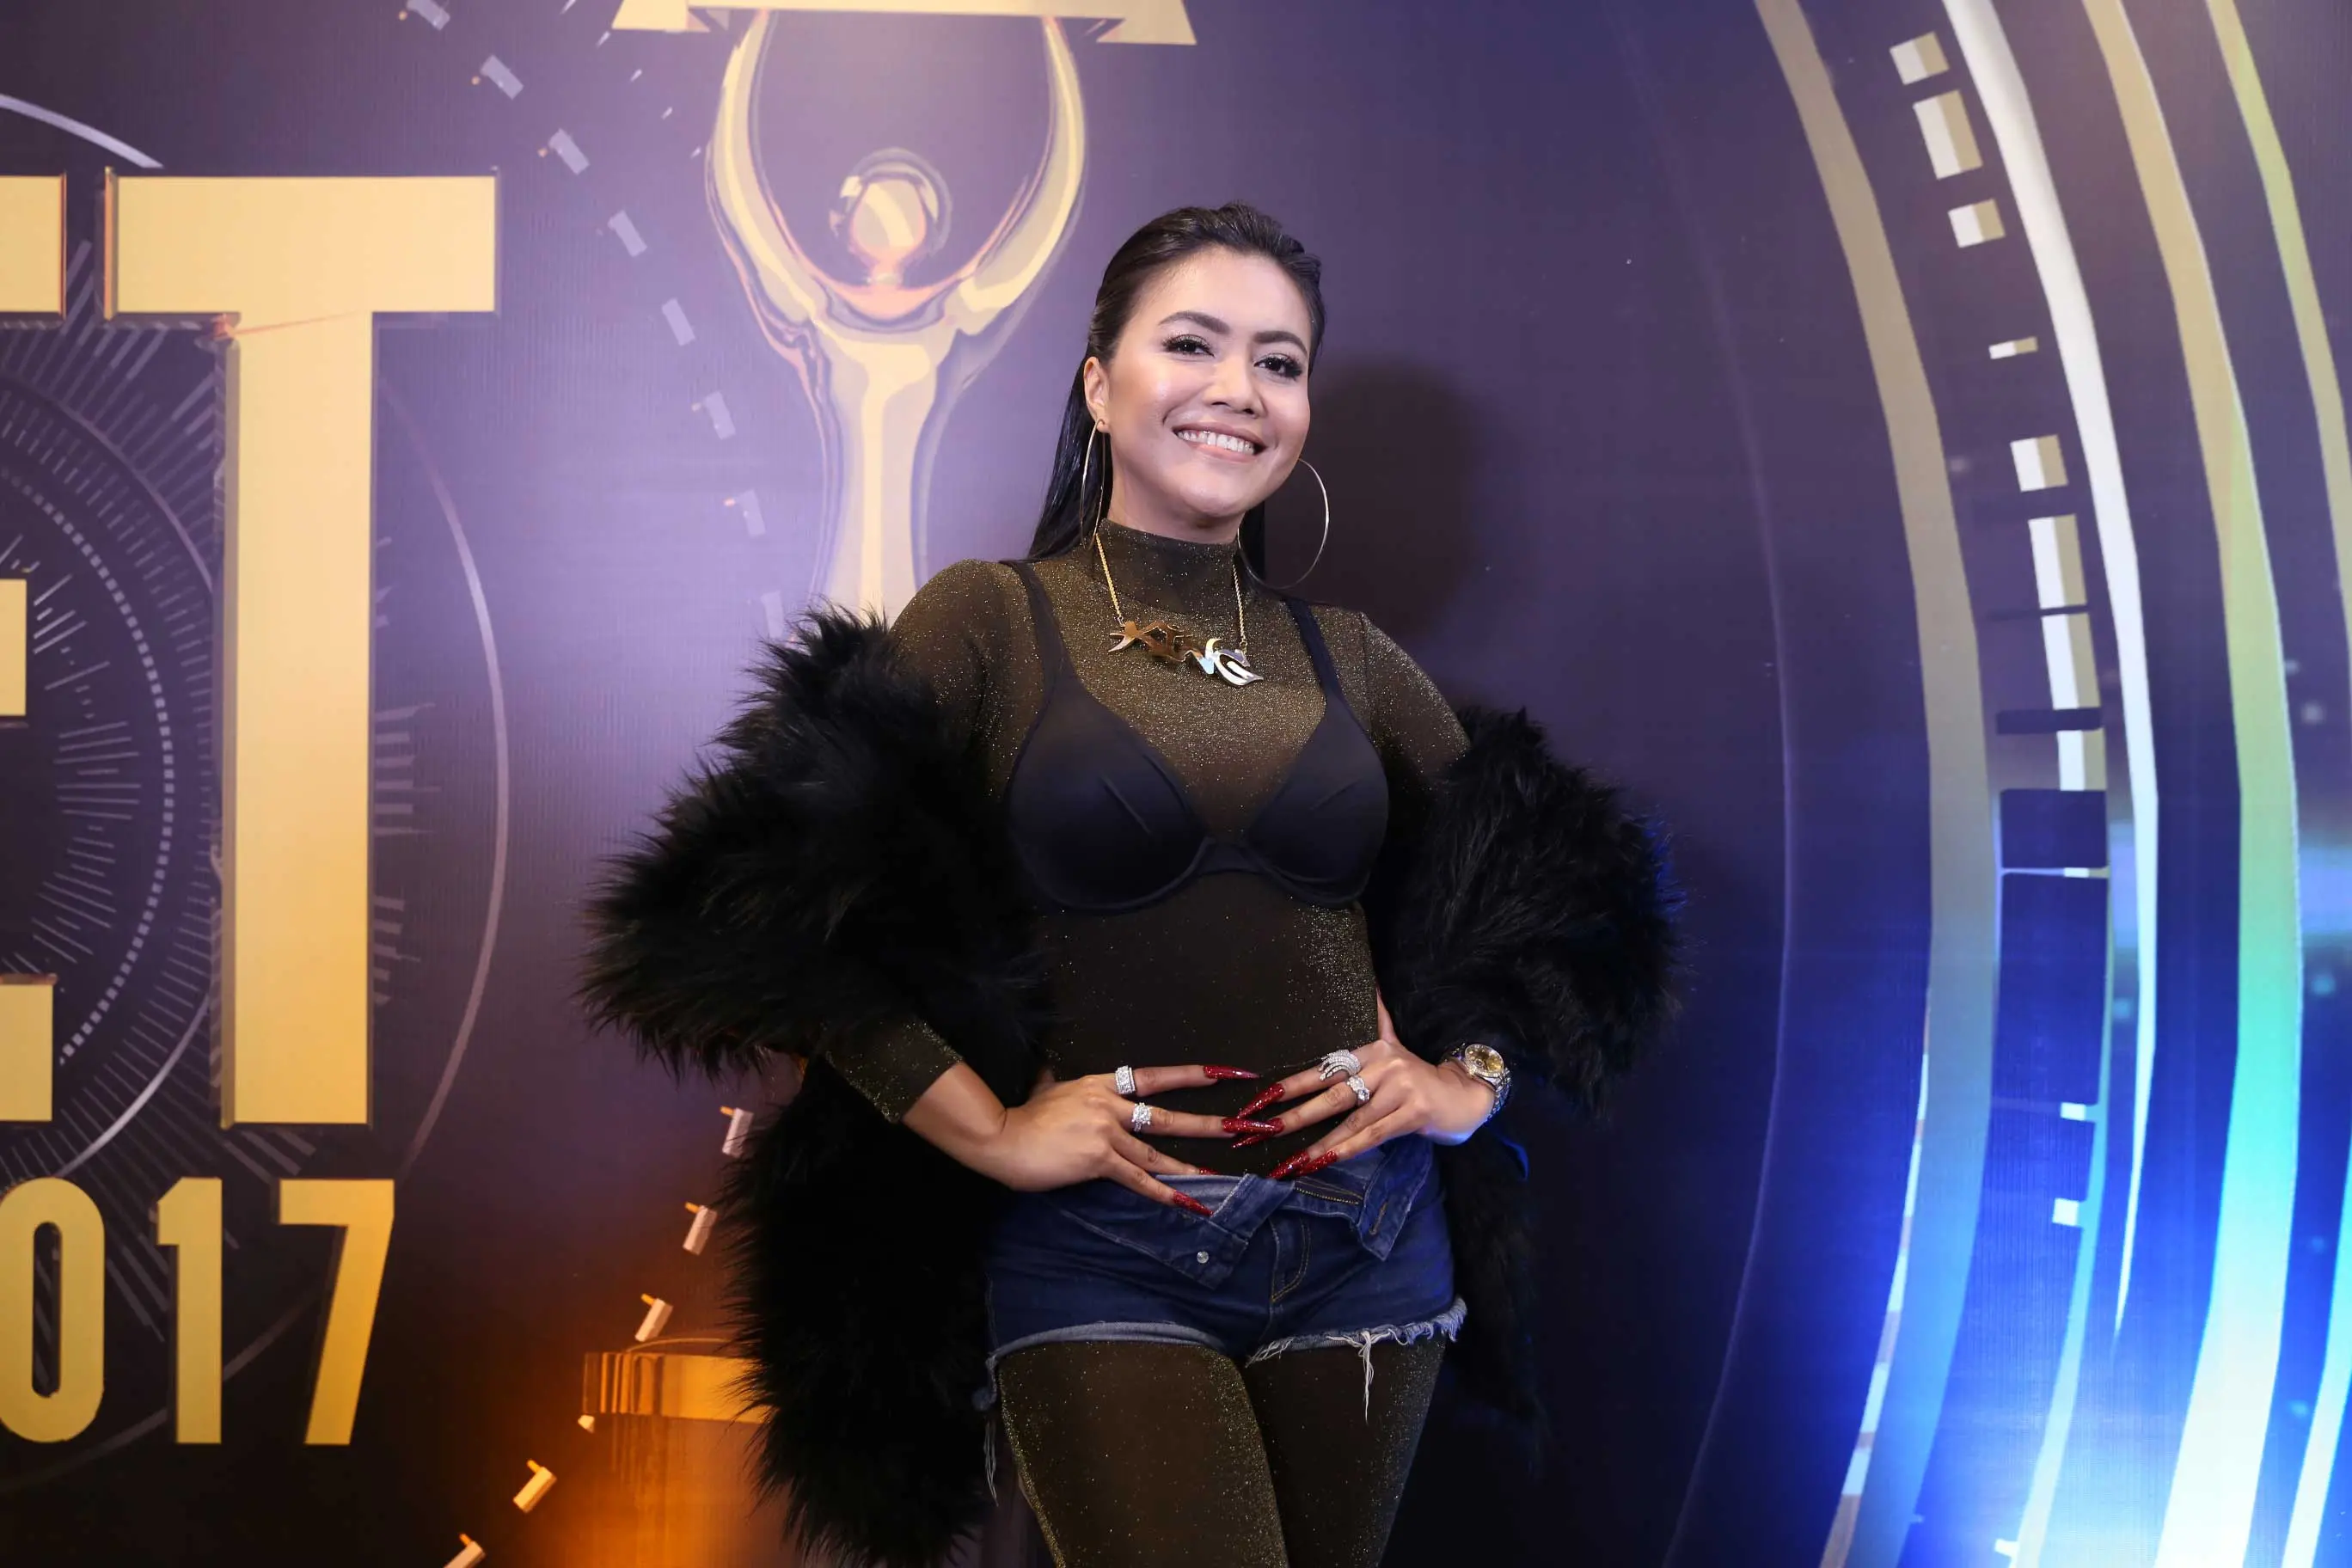 Denada tampil super seksi saat di Silet Awards 2017. (Nurwahyunan/Bintang.com)